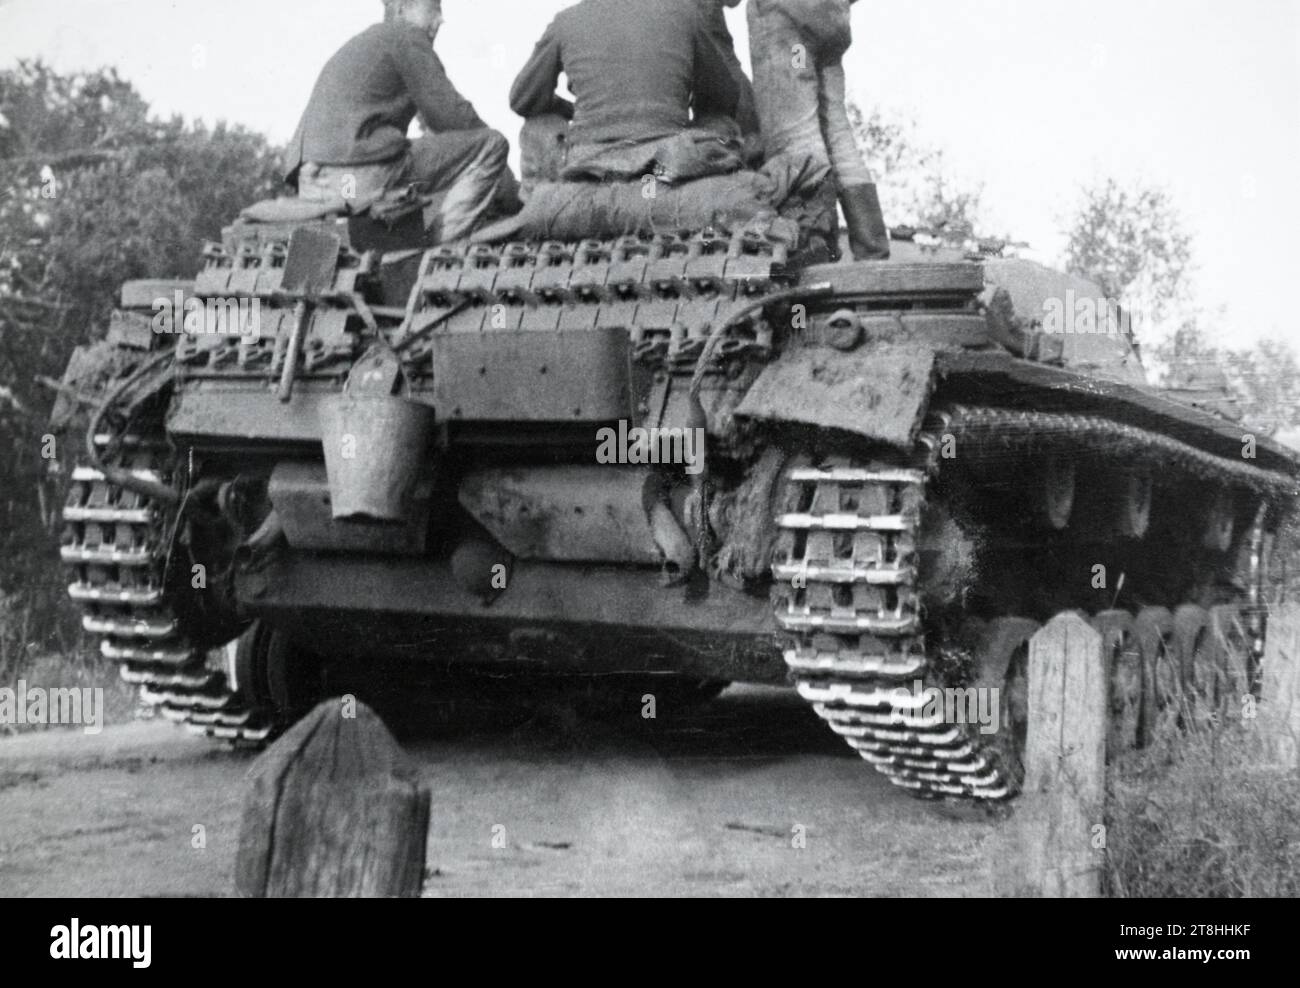 Una vista posteriore di un cannone d'assalto Sturmgeschütz III dell'esercito tedesco durante la seconda guerra mondiale. Foto Stock